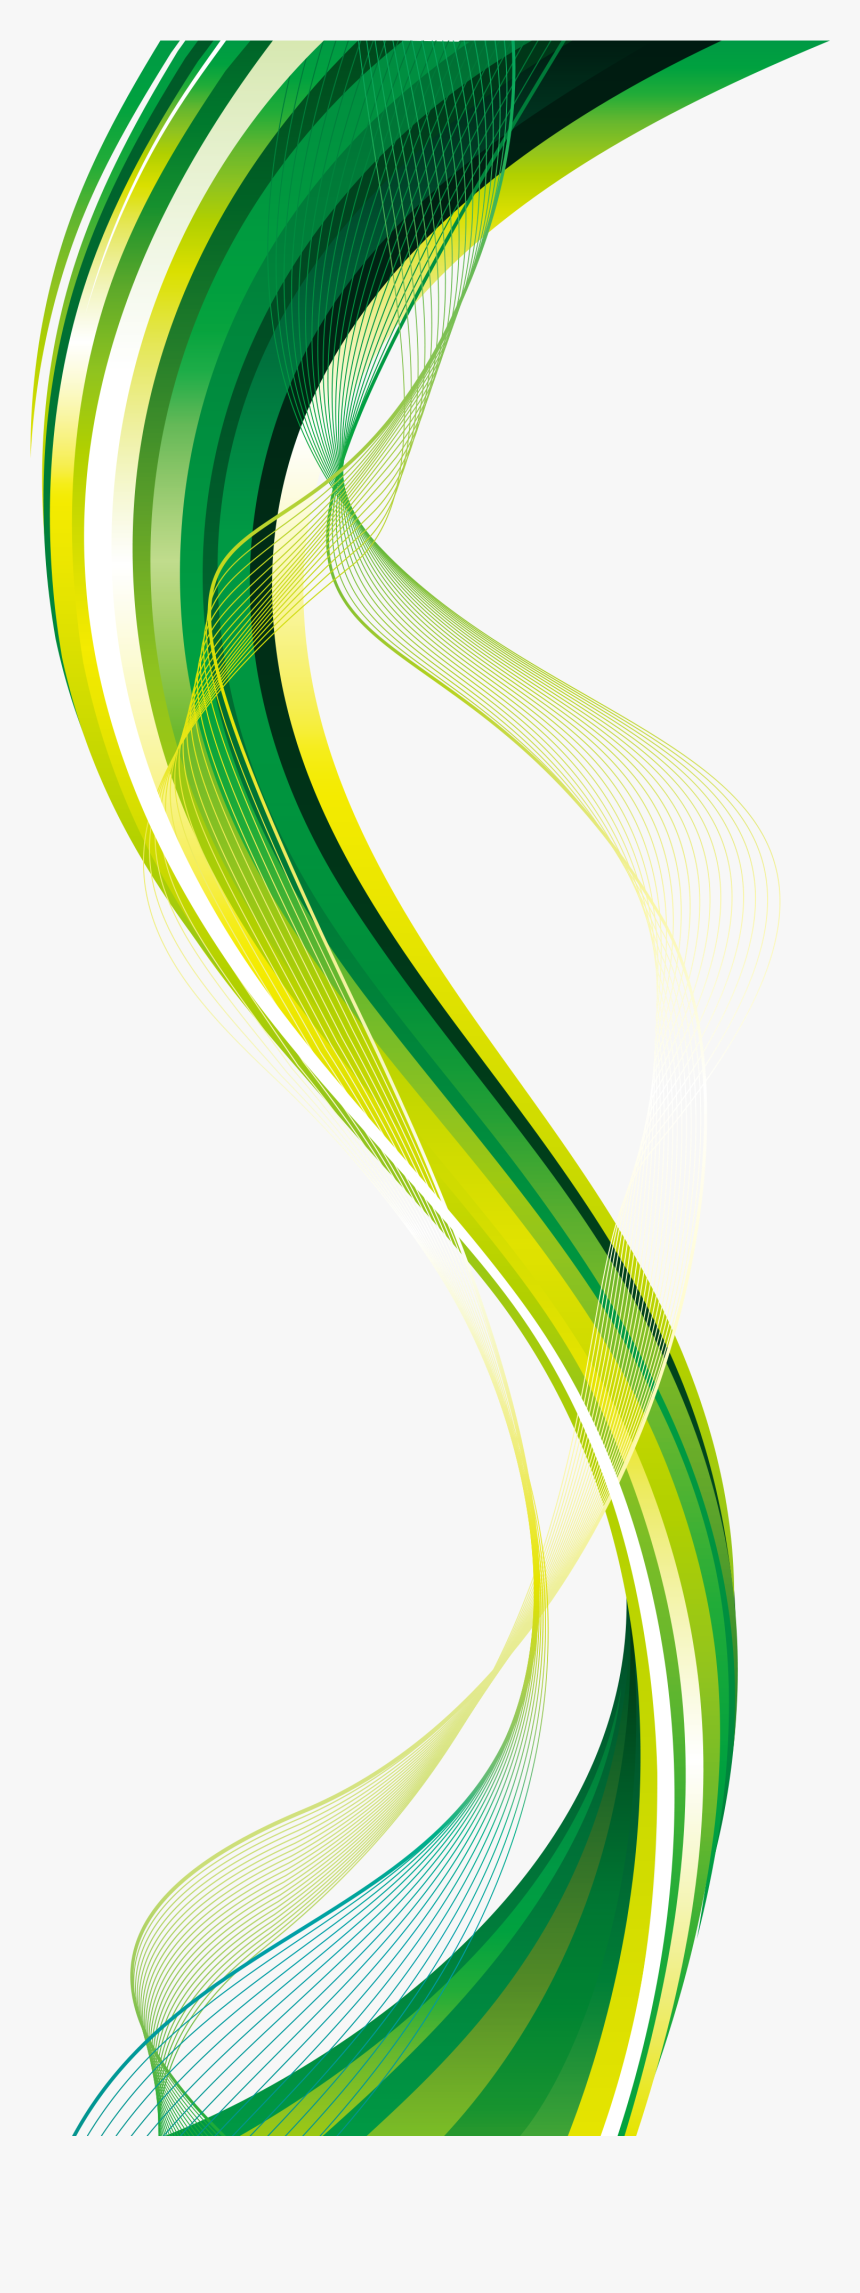 Transparent Vector Images - Background Design Vector Png Green, Png  Download - kindpng